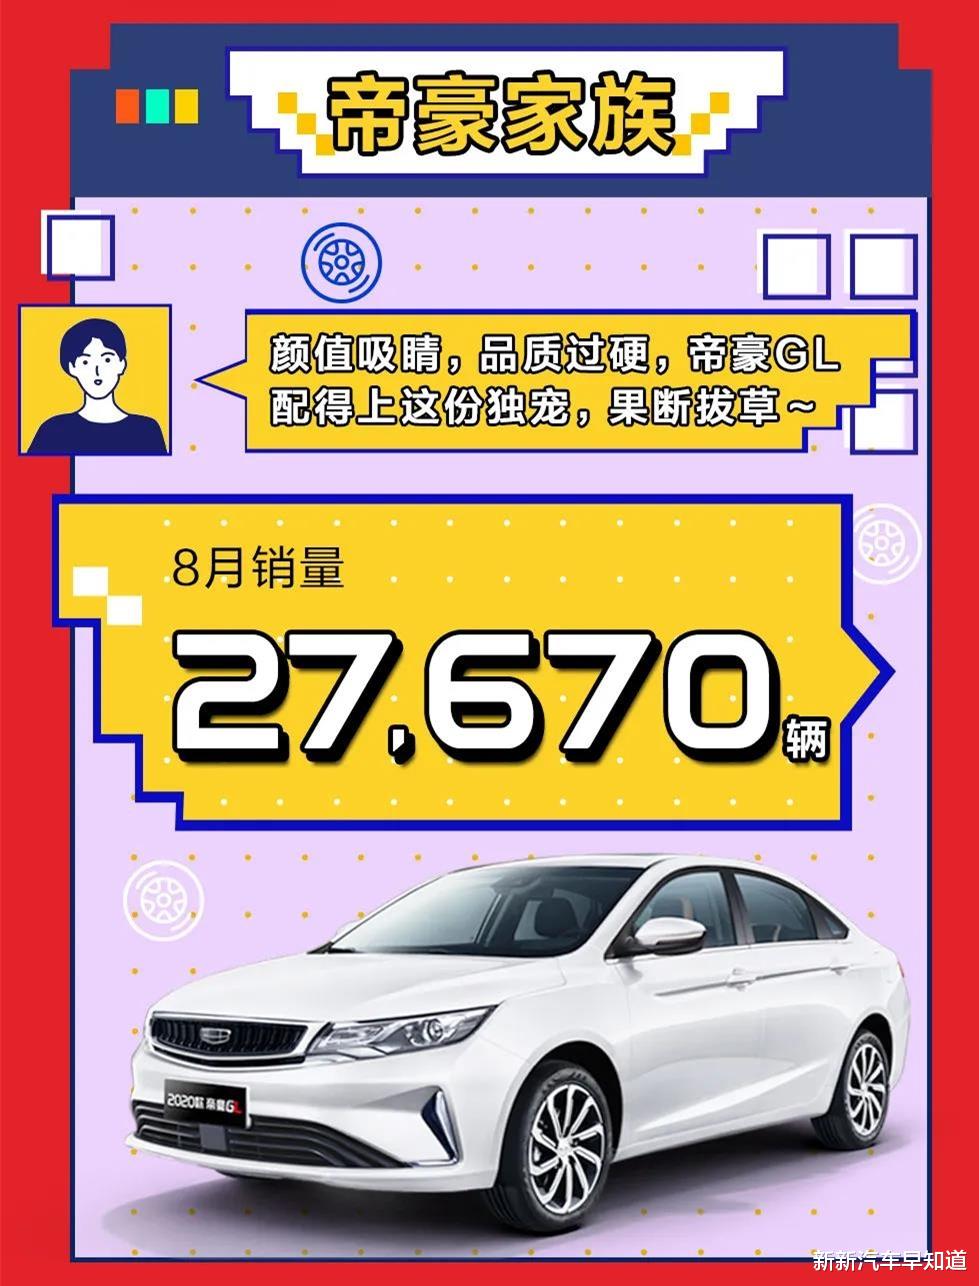 中国自主三连冠吉利汽车8月销量11.3万辆 同比增长12%